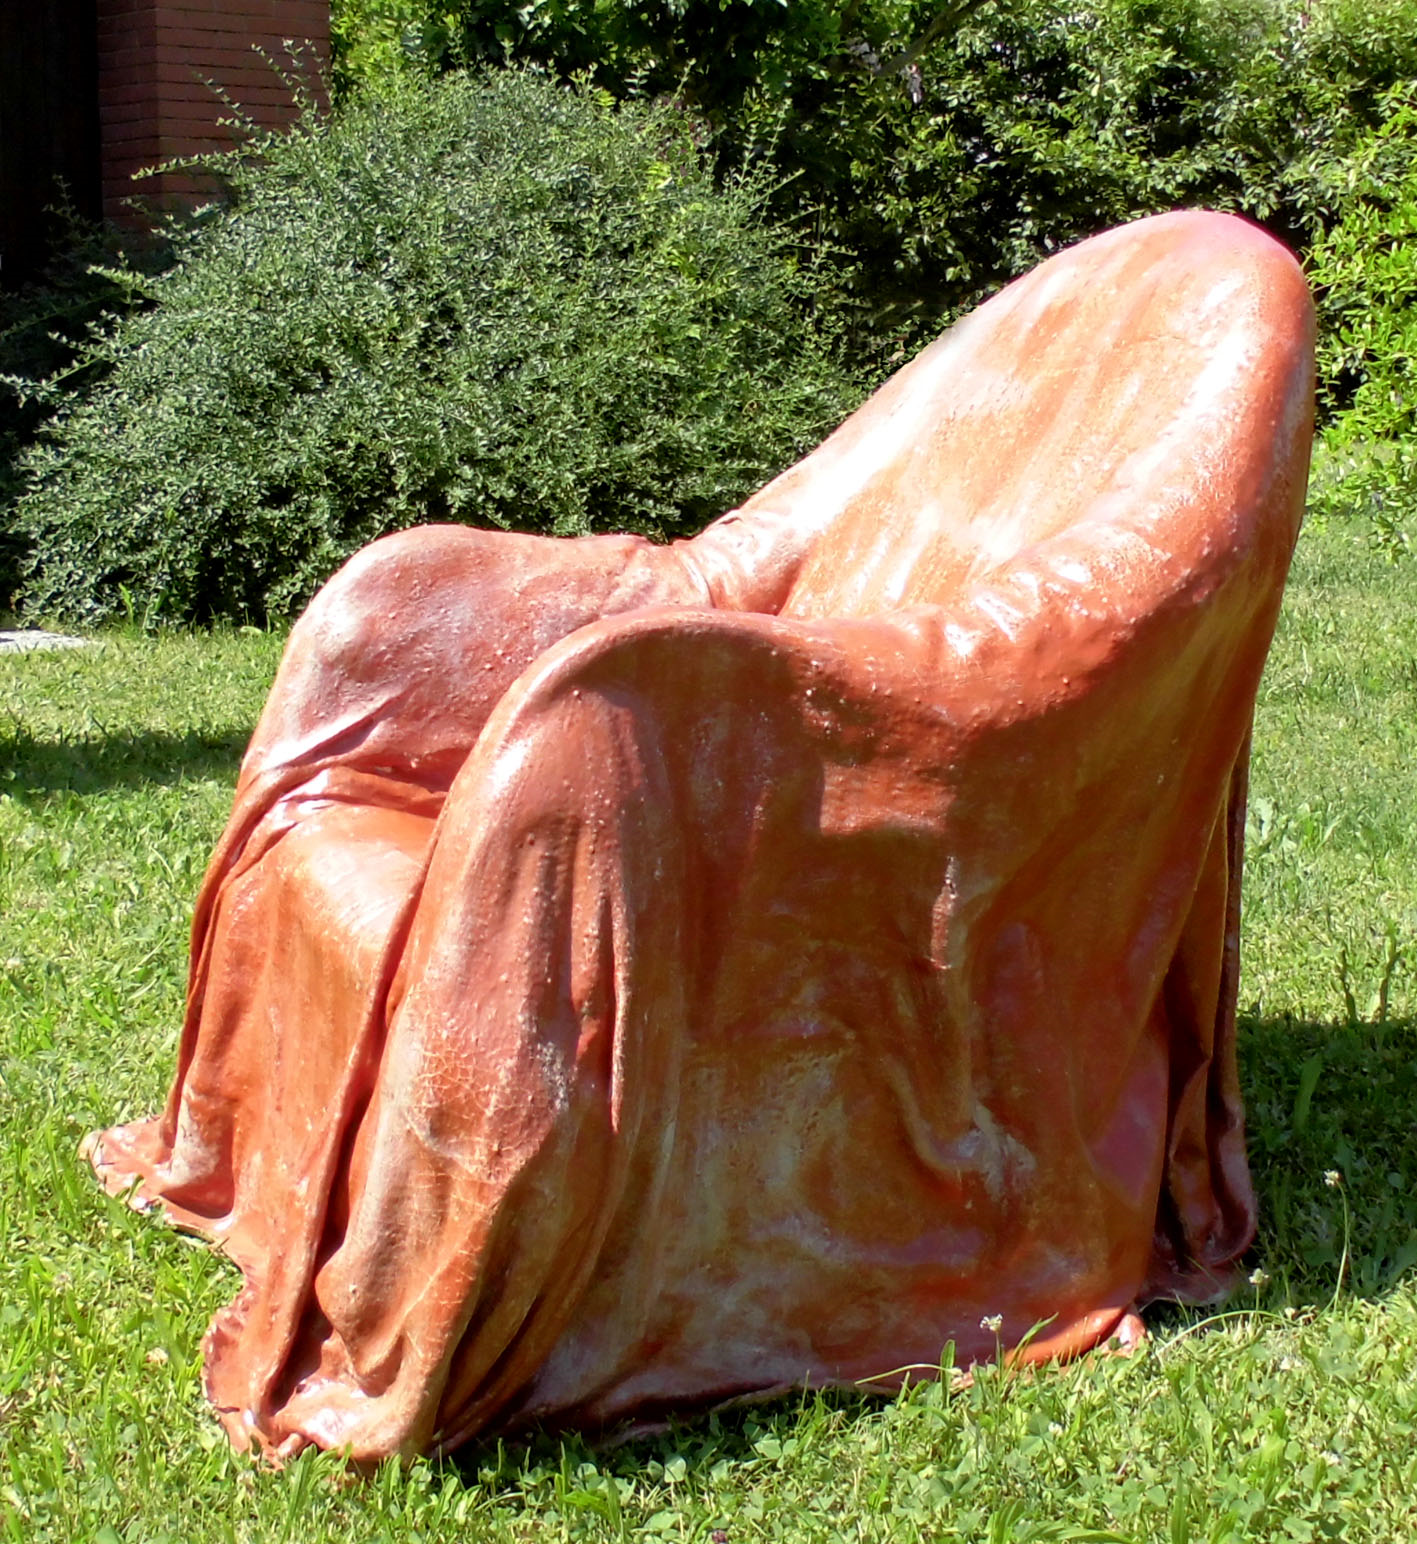  poltrona (2011) cm.100 x 70 x 85, gomma naturale, tela, legno